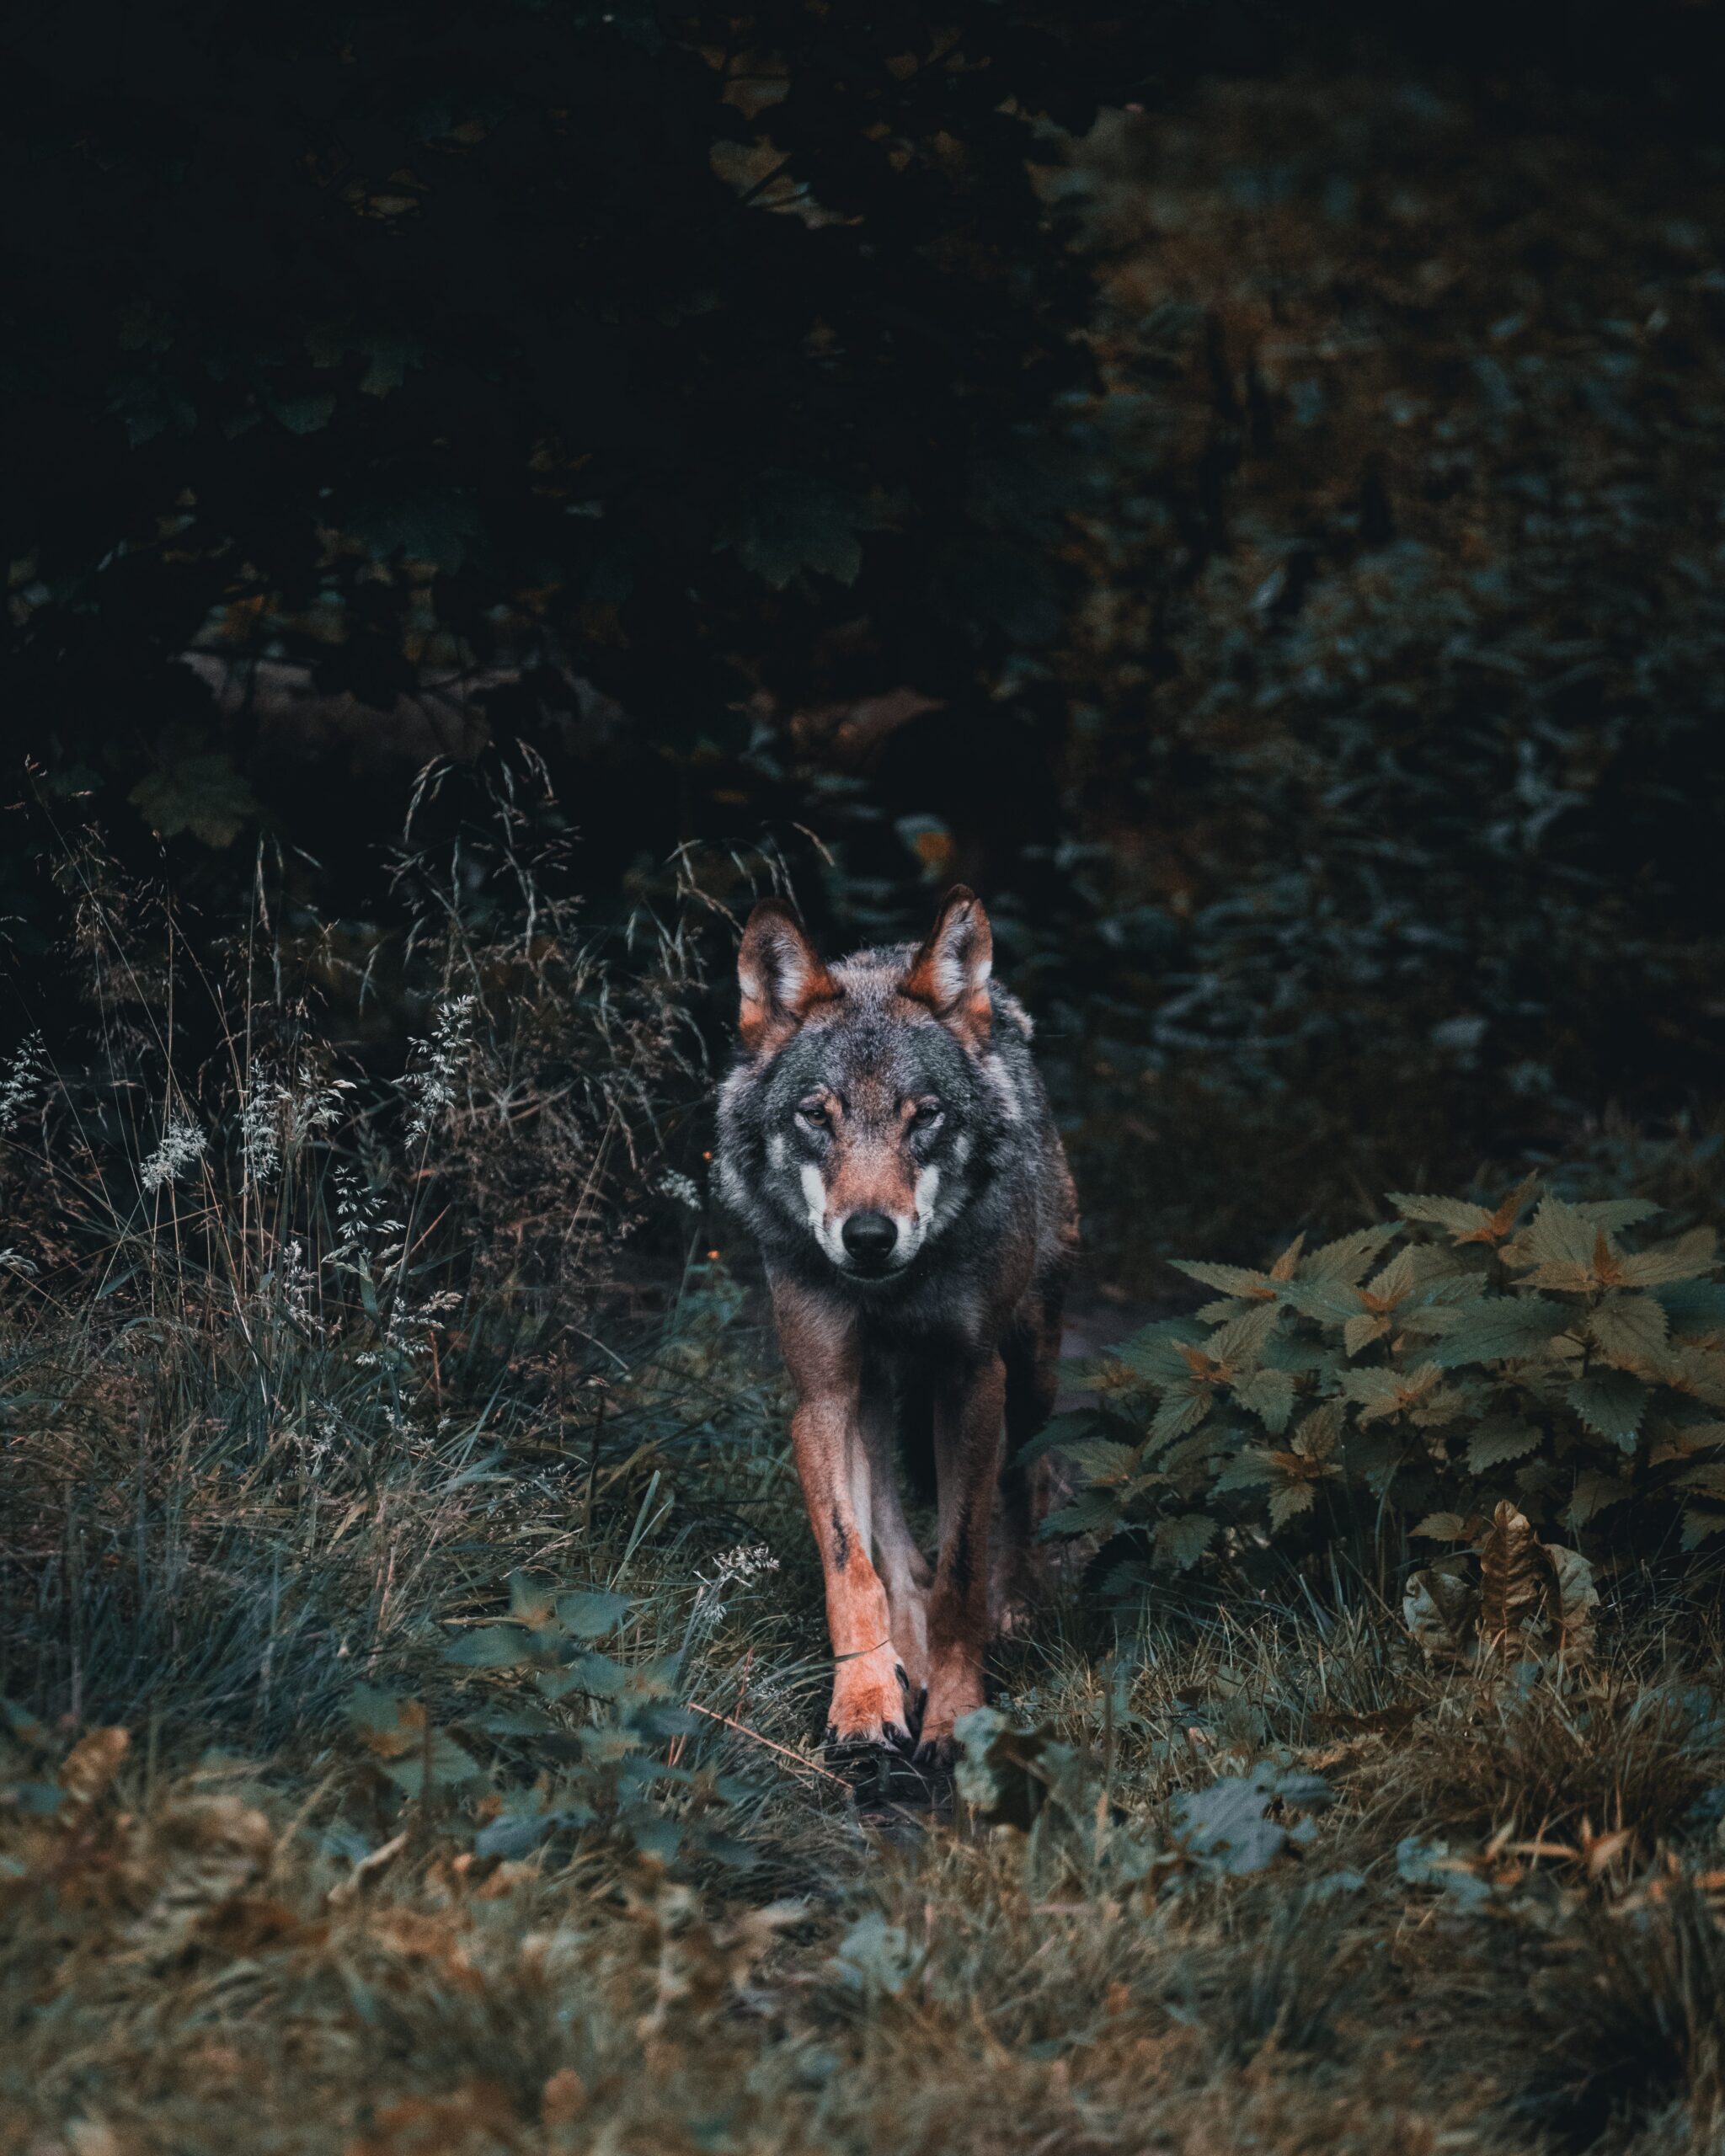 Pericolosità, vera o presunta, del lupo per gli umani